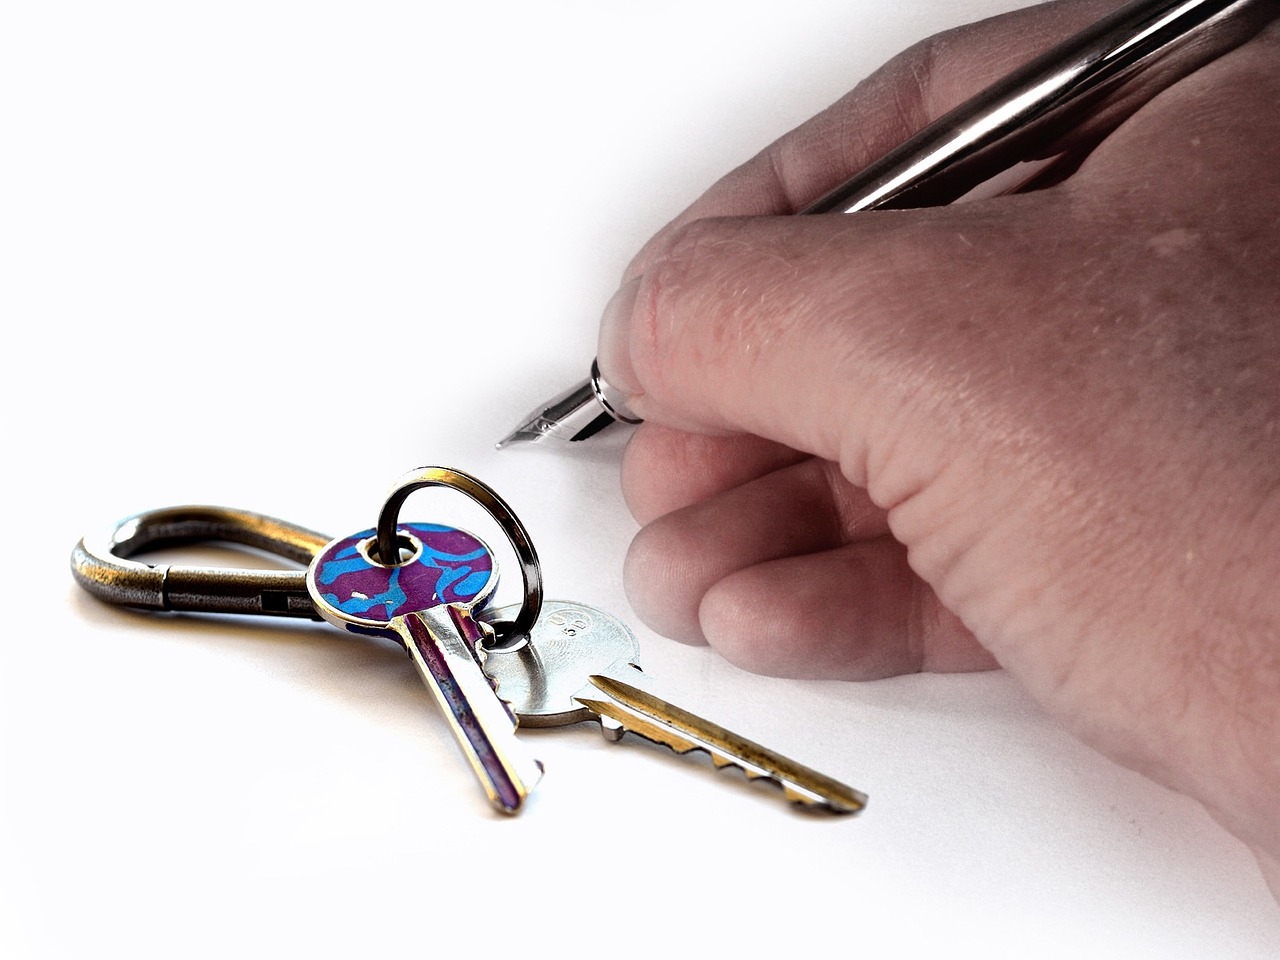 האם שוכר חייב לתת מפתח לבעל הבית?